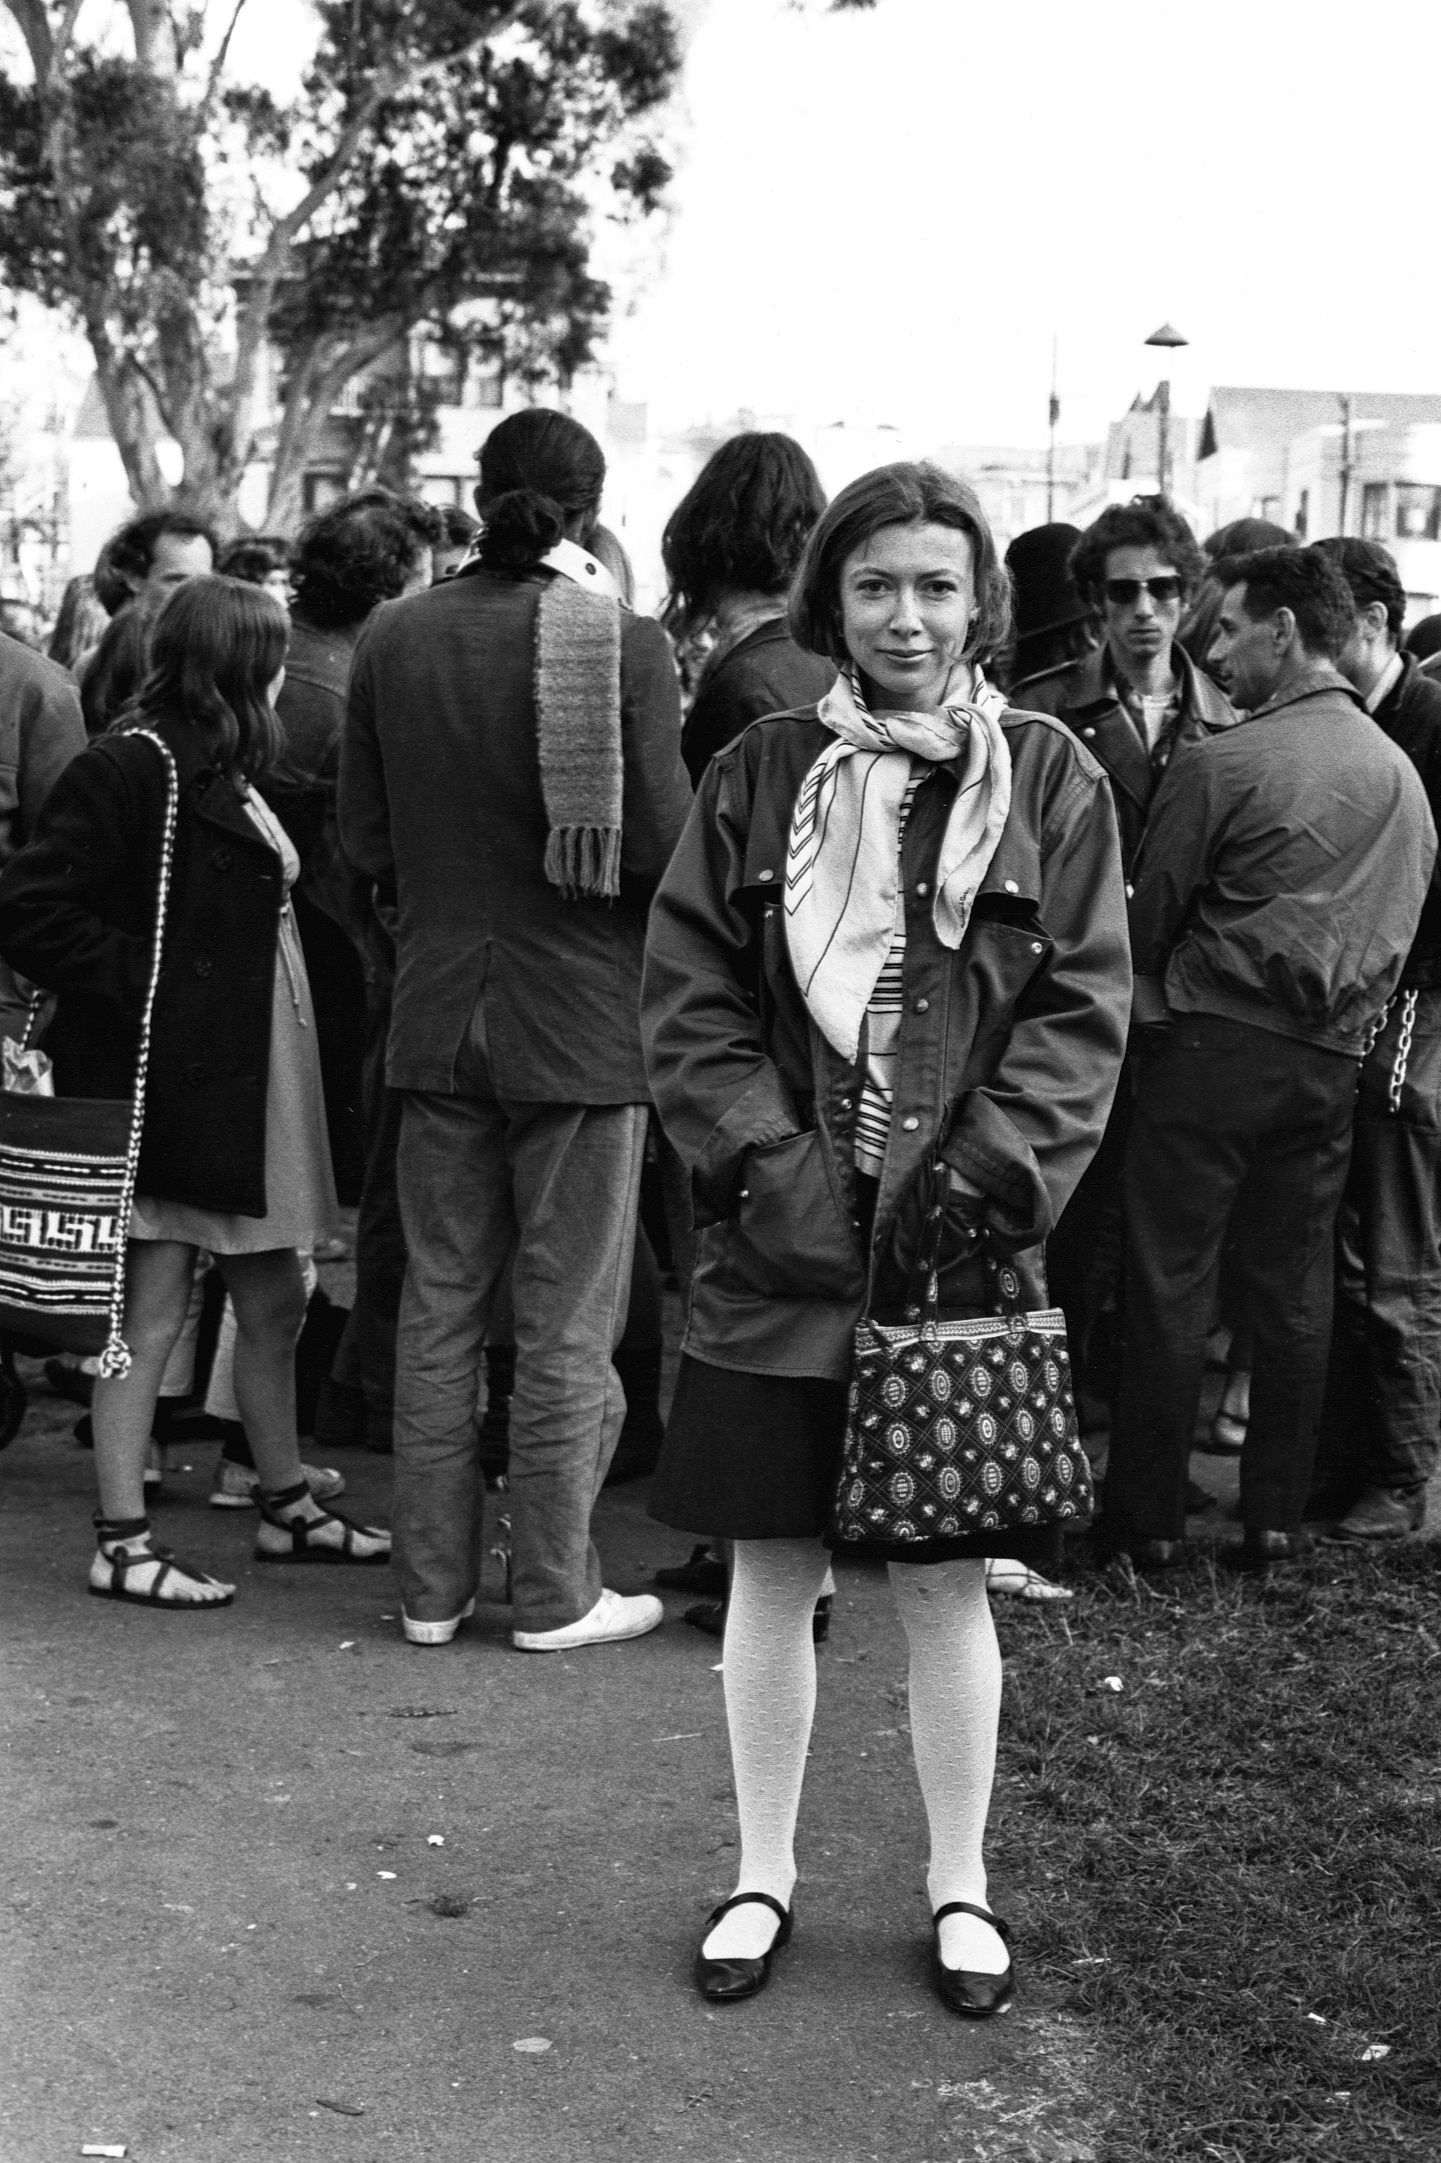 Η συγγραφέας Joan Didion στέκεται στο πάρκο Golden Gate Park με μια ομάδα χίπηδων κατά τη διάρκεια της συγγραφής του άρθρου της «Slouching Towards Bethlehem»